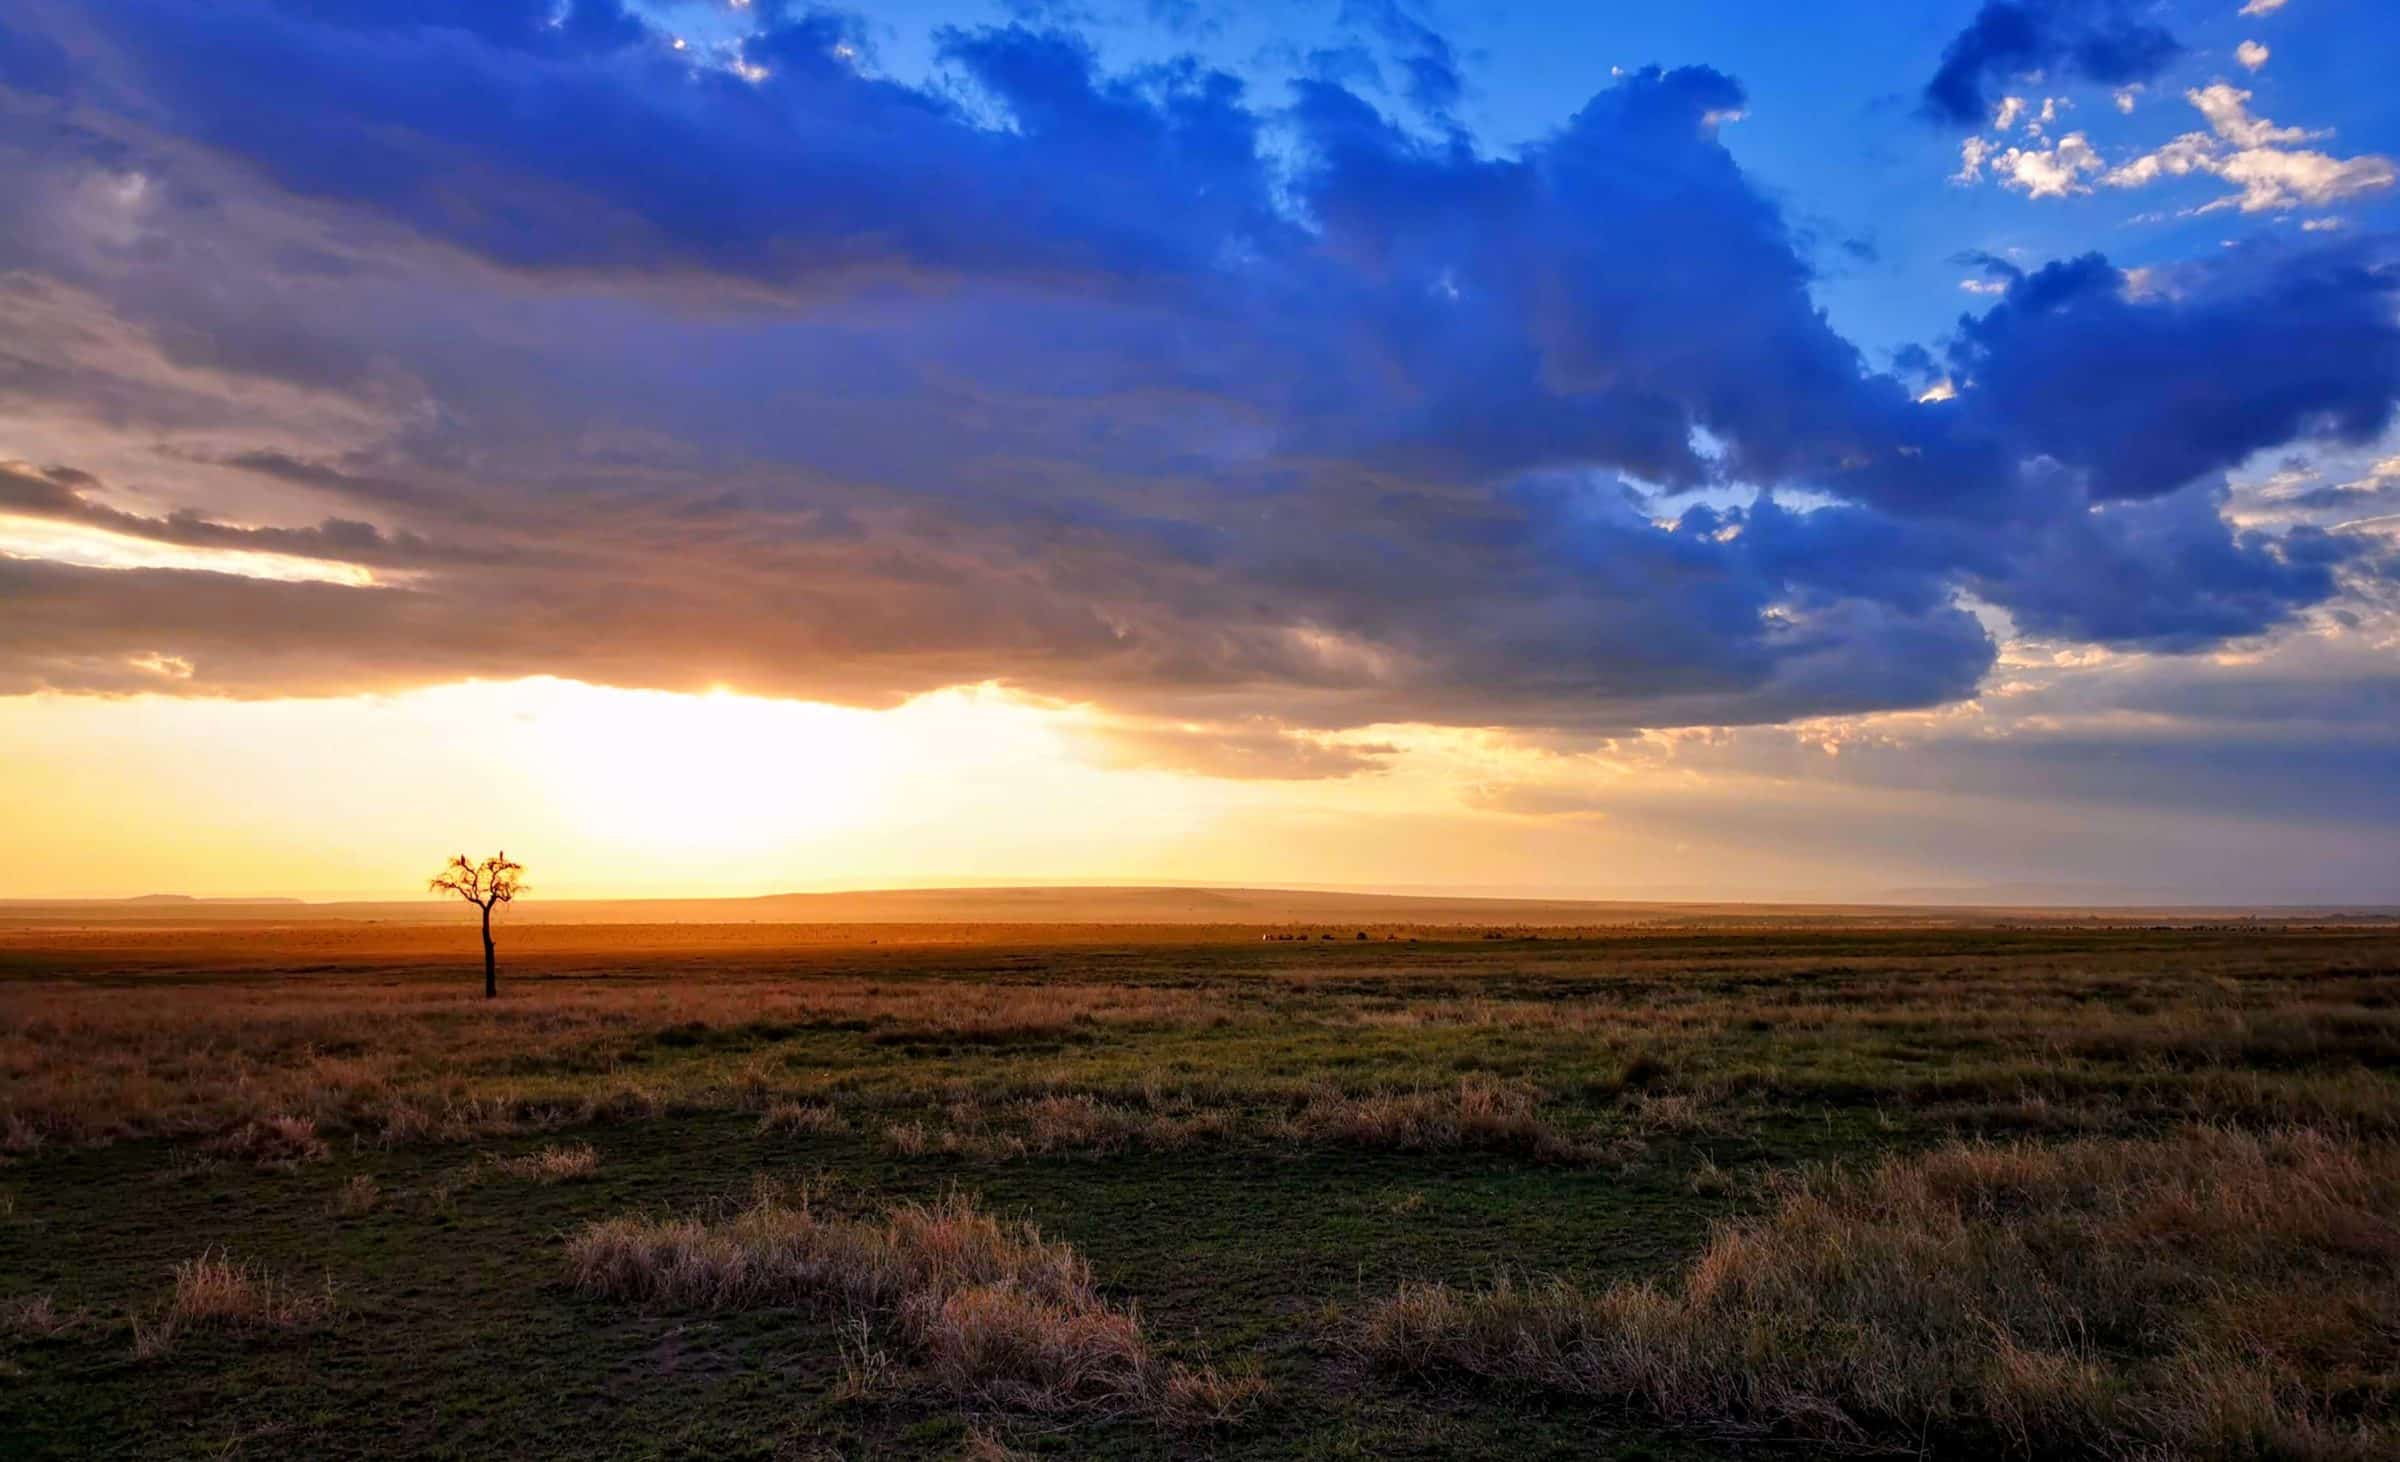 Store skyer, forvillede trær og noen dyr i bakgrunnen. Bare nok en dag i Masai Mara